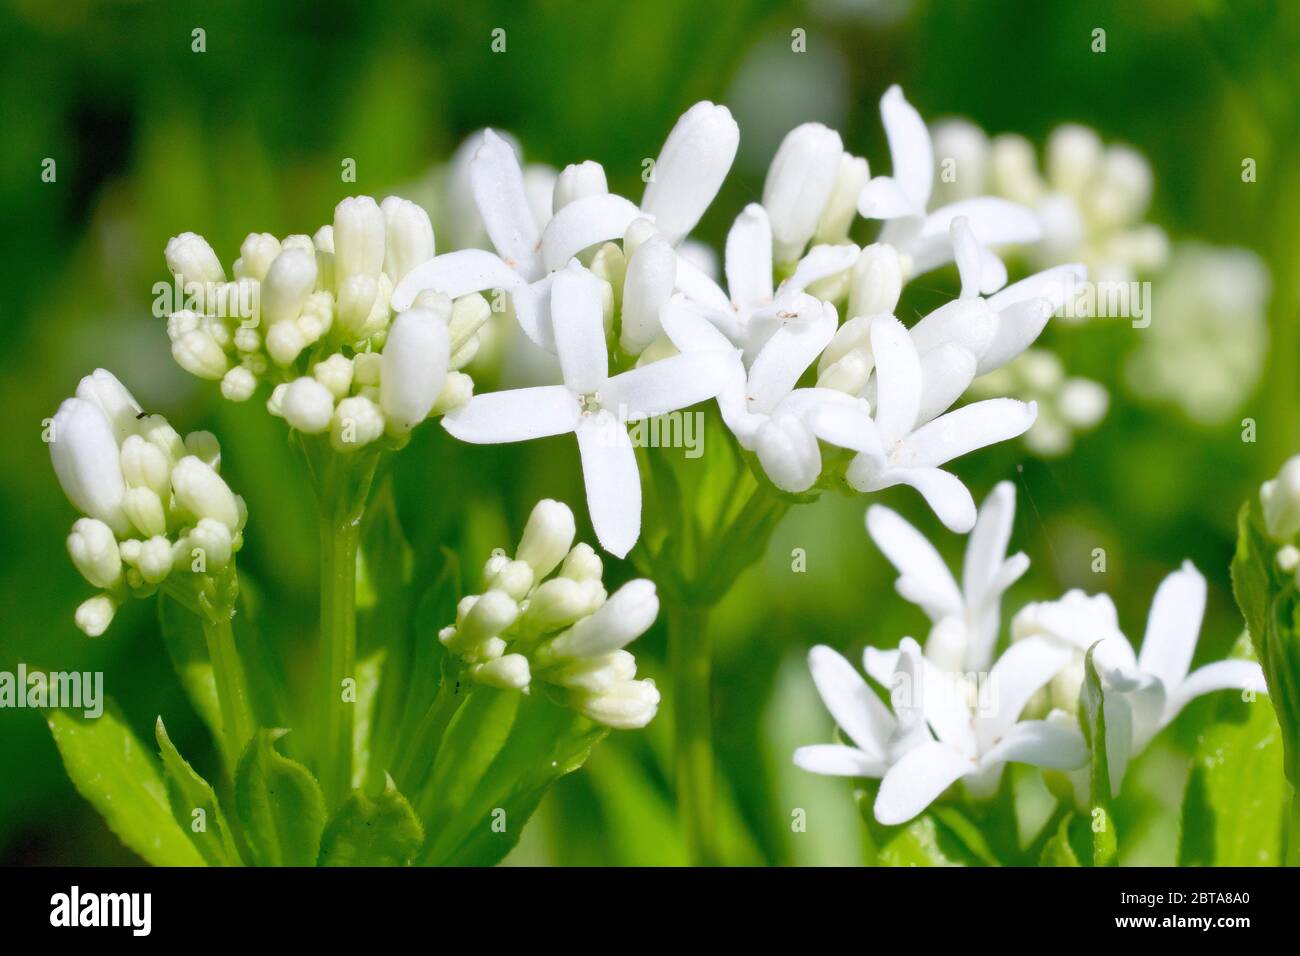 Waldmeister oder Süßer Waldmeister (galium odoratum), Nahaufnahme einer Gruppe von Blütenköpfen mit Blüten und Knospen. Stockfoto